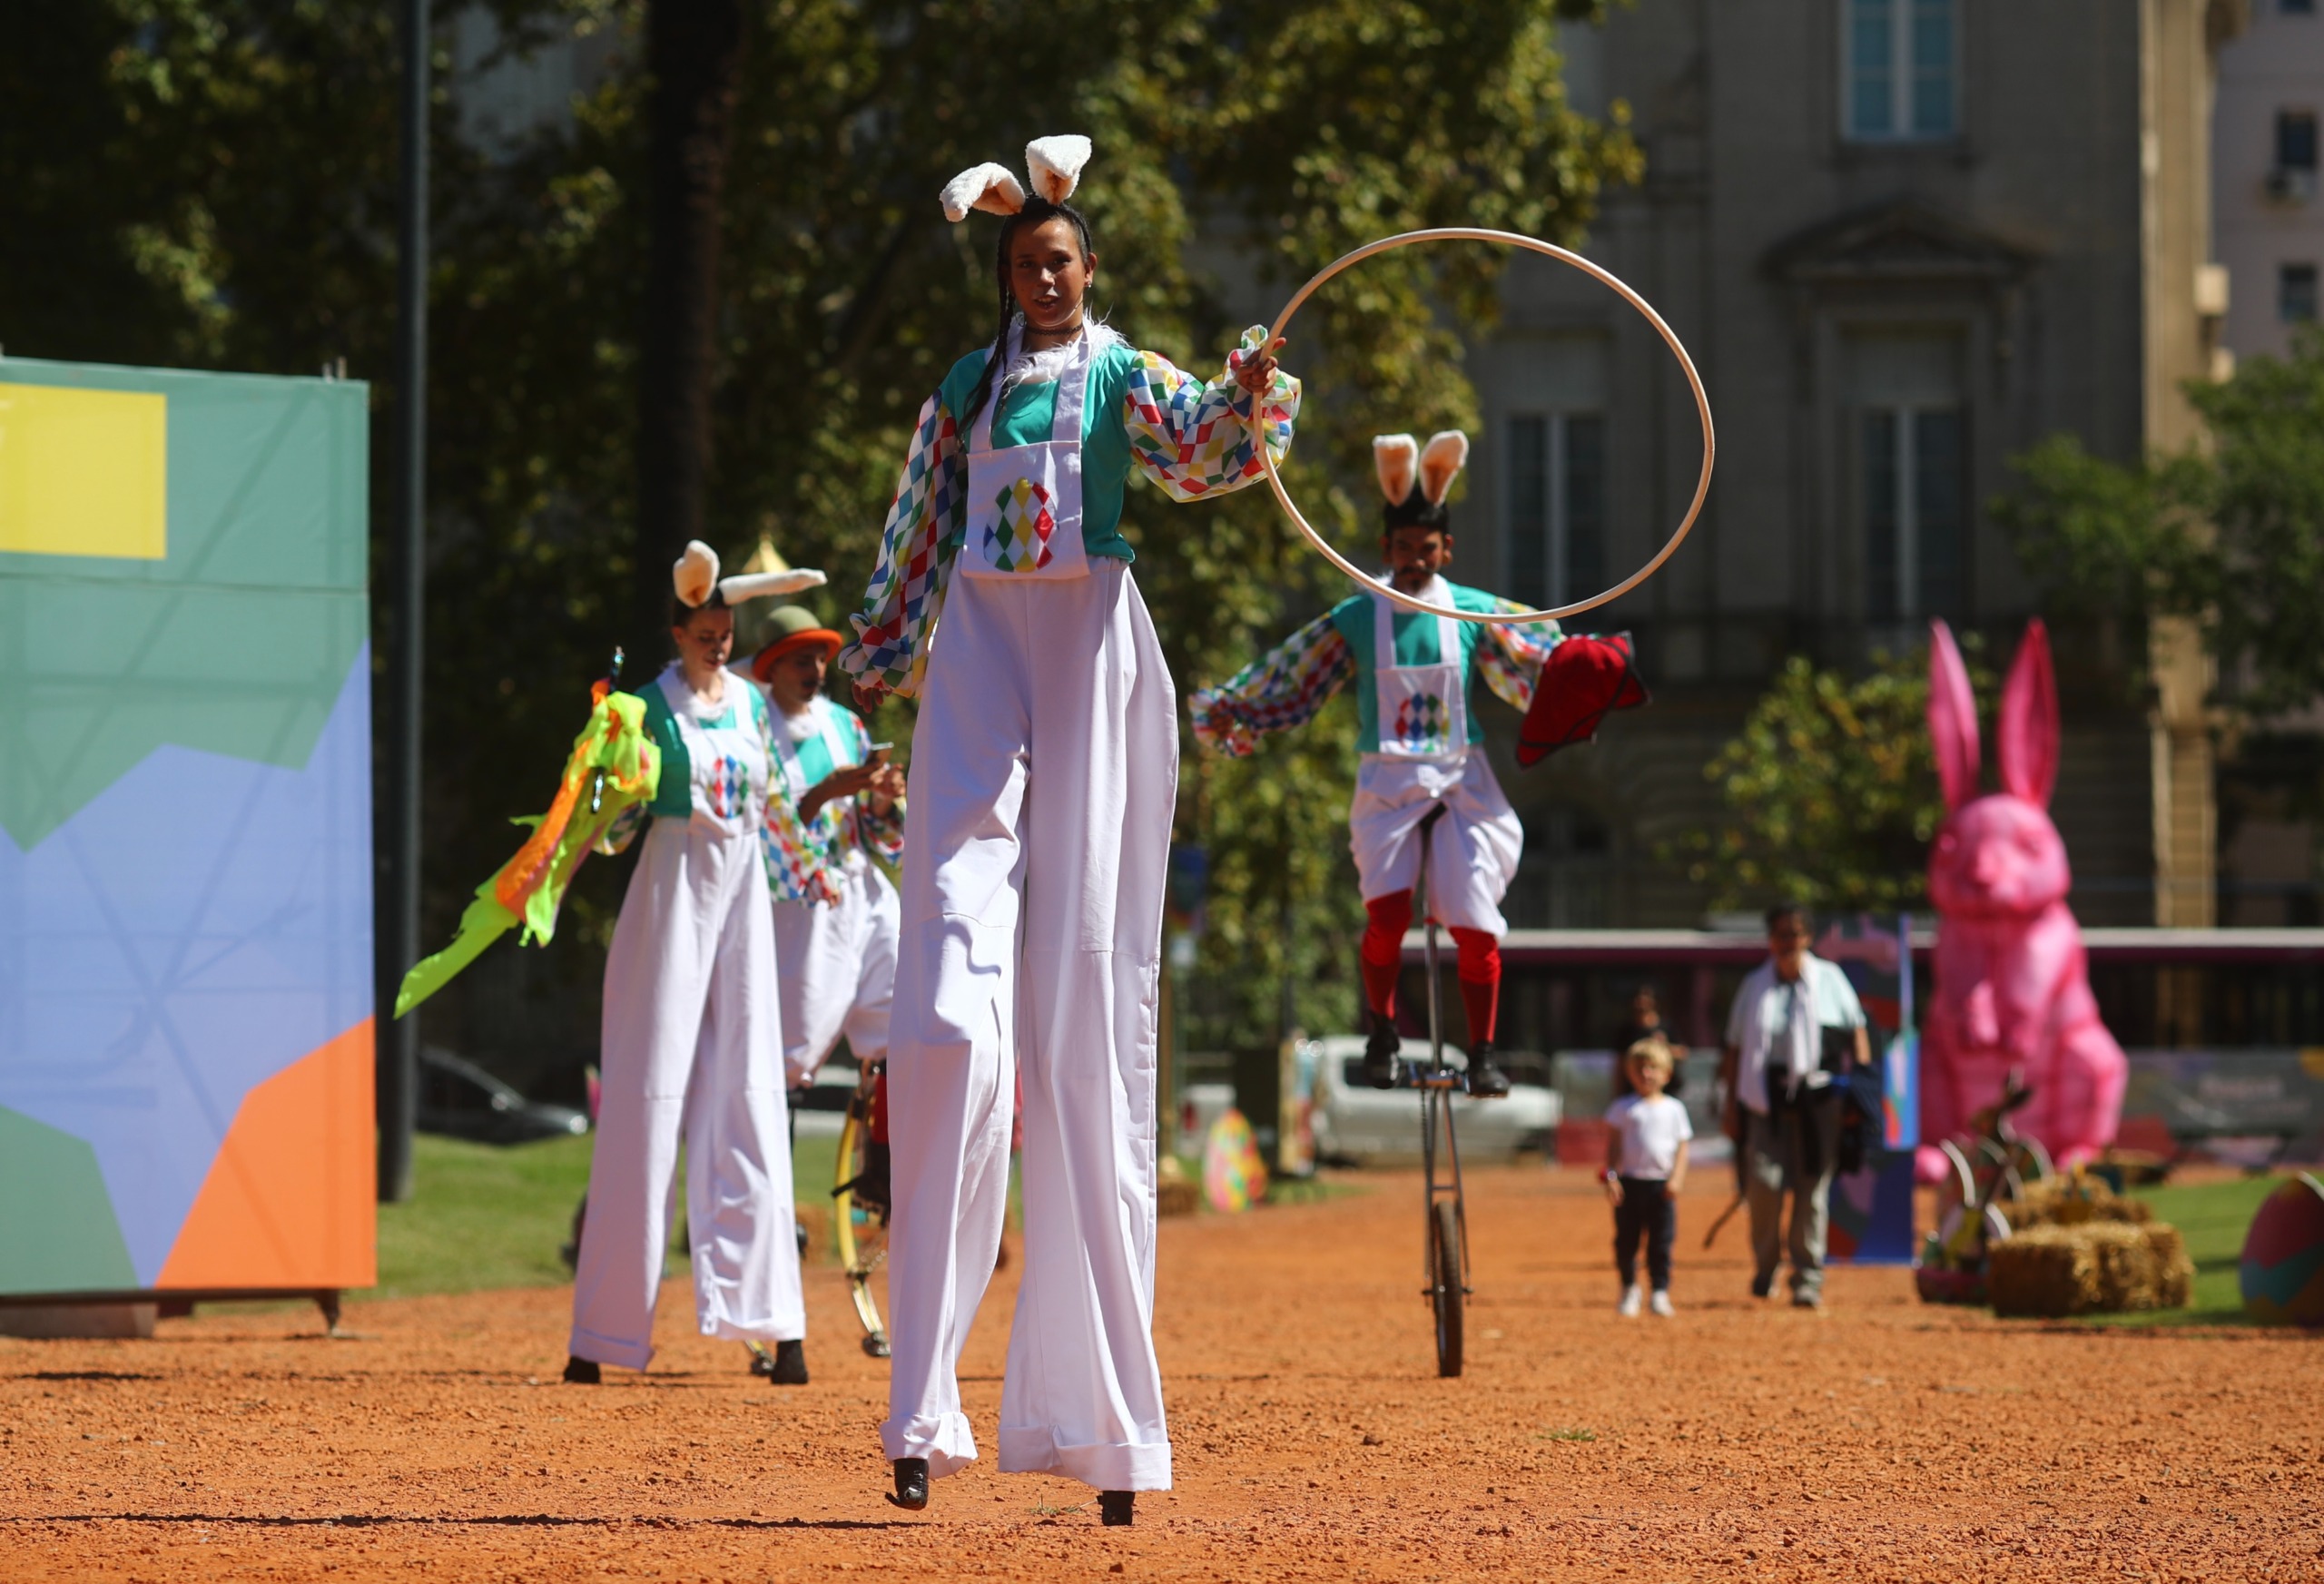 Actividades para chicos, música y circo: la agenda cultural para disfrutar en Buenos Aires